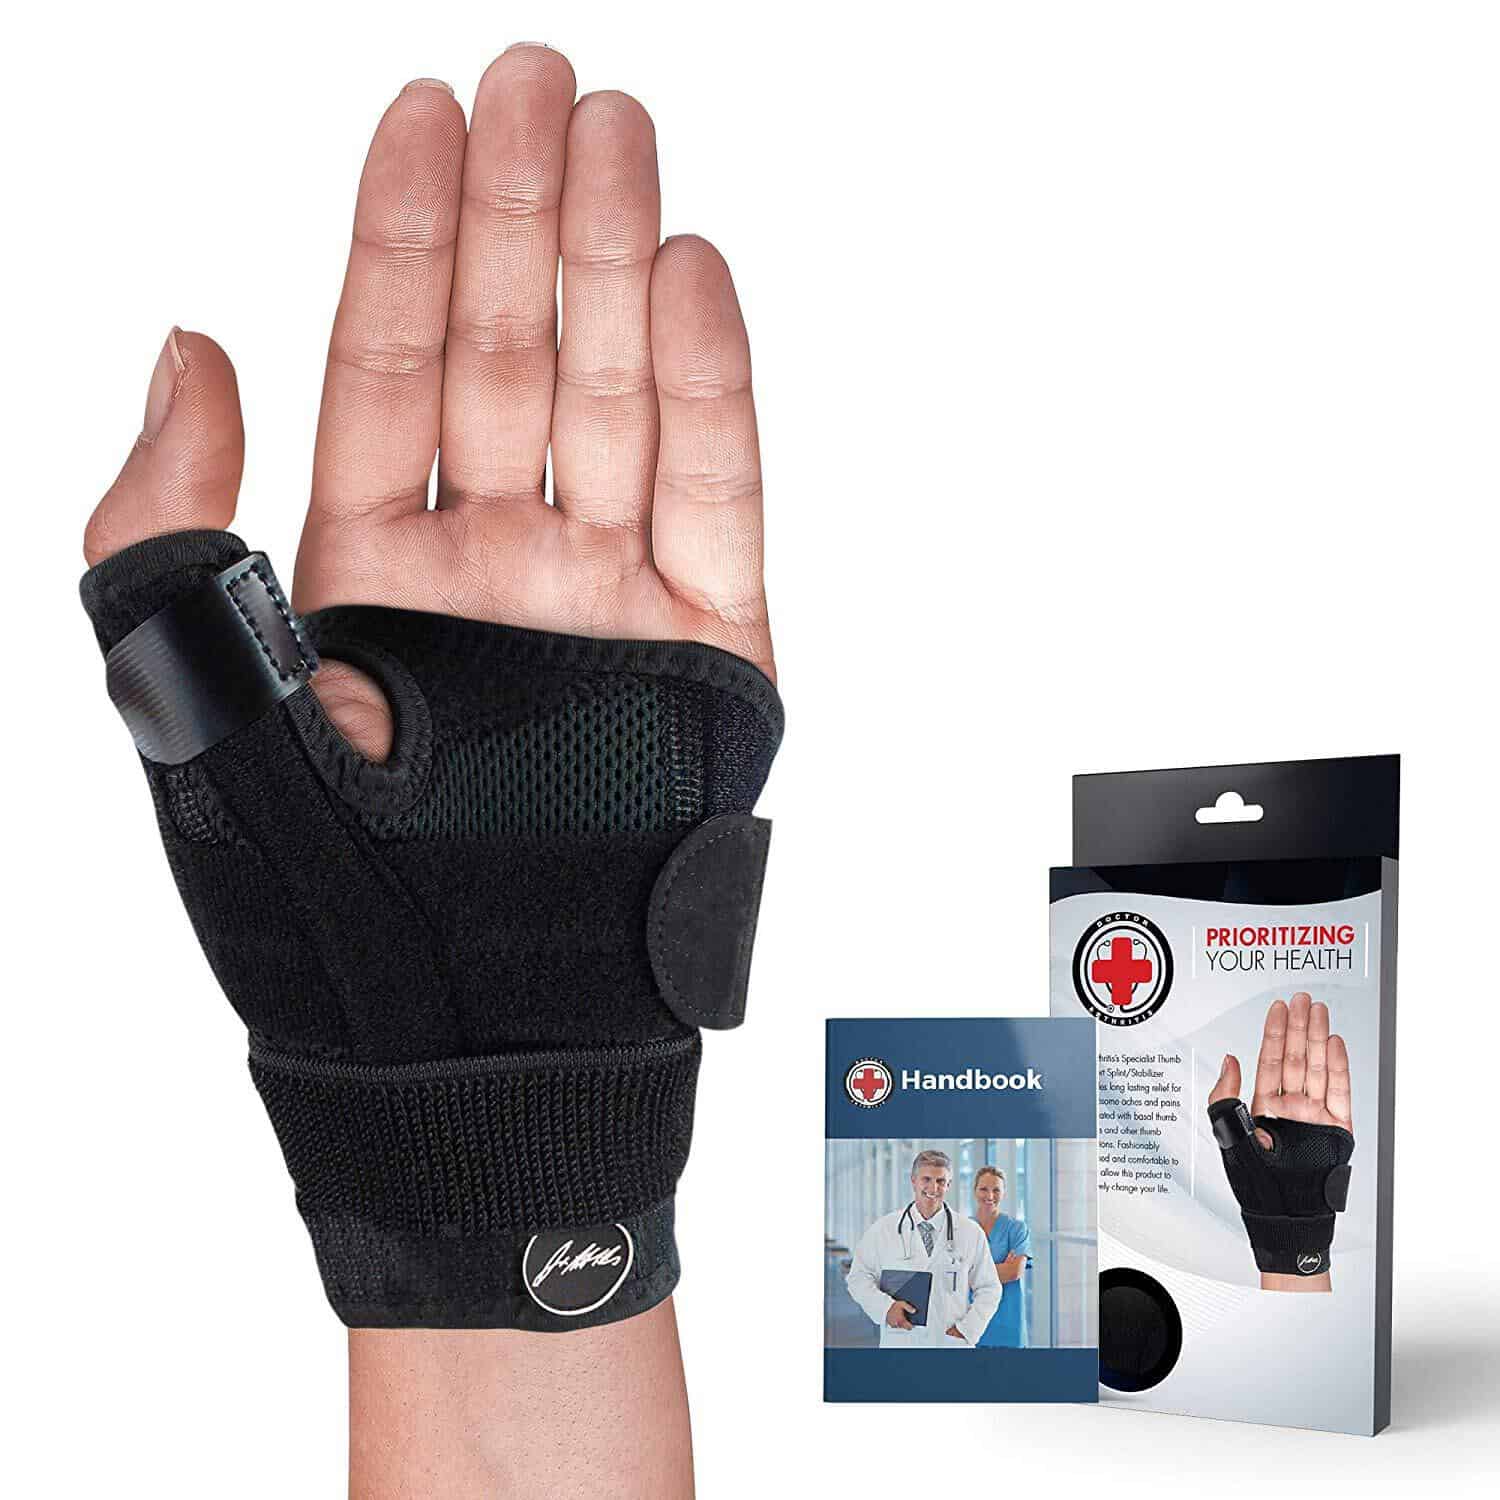 Thumb Brace/ Support & Doctor Written Handbook - Dr. Arthritis